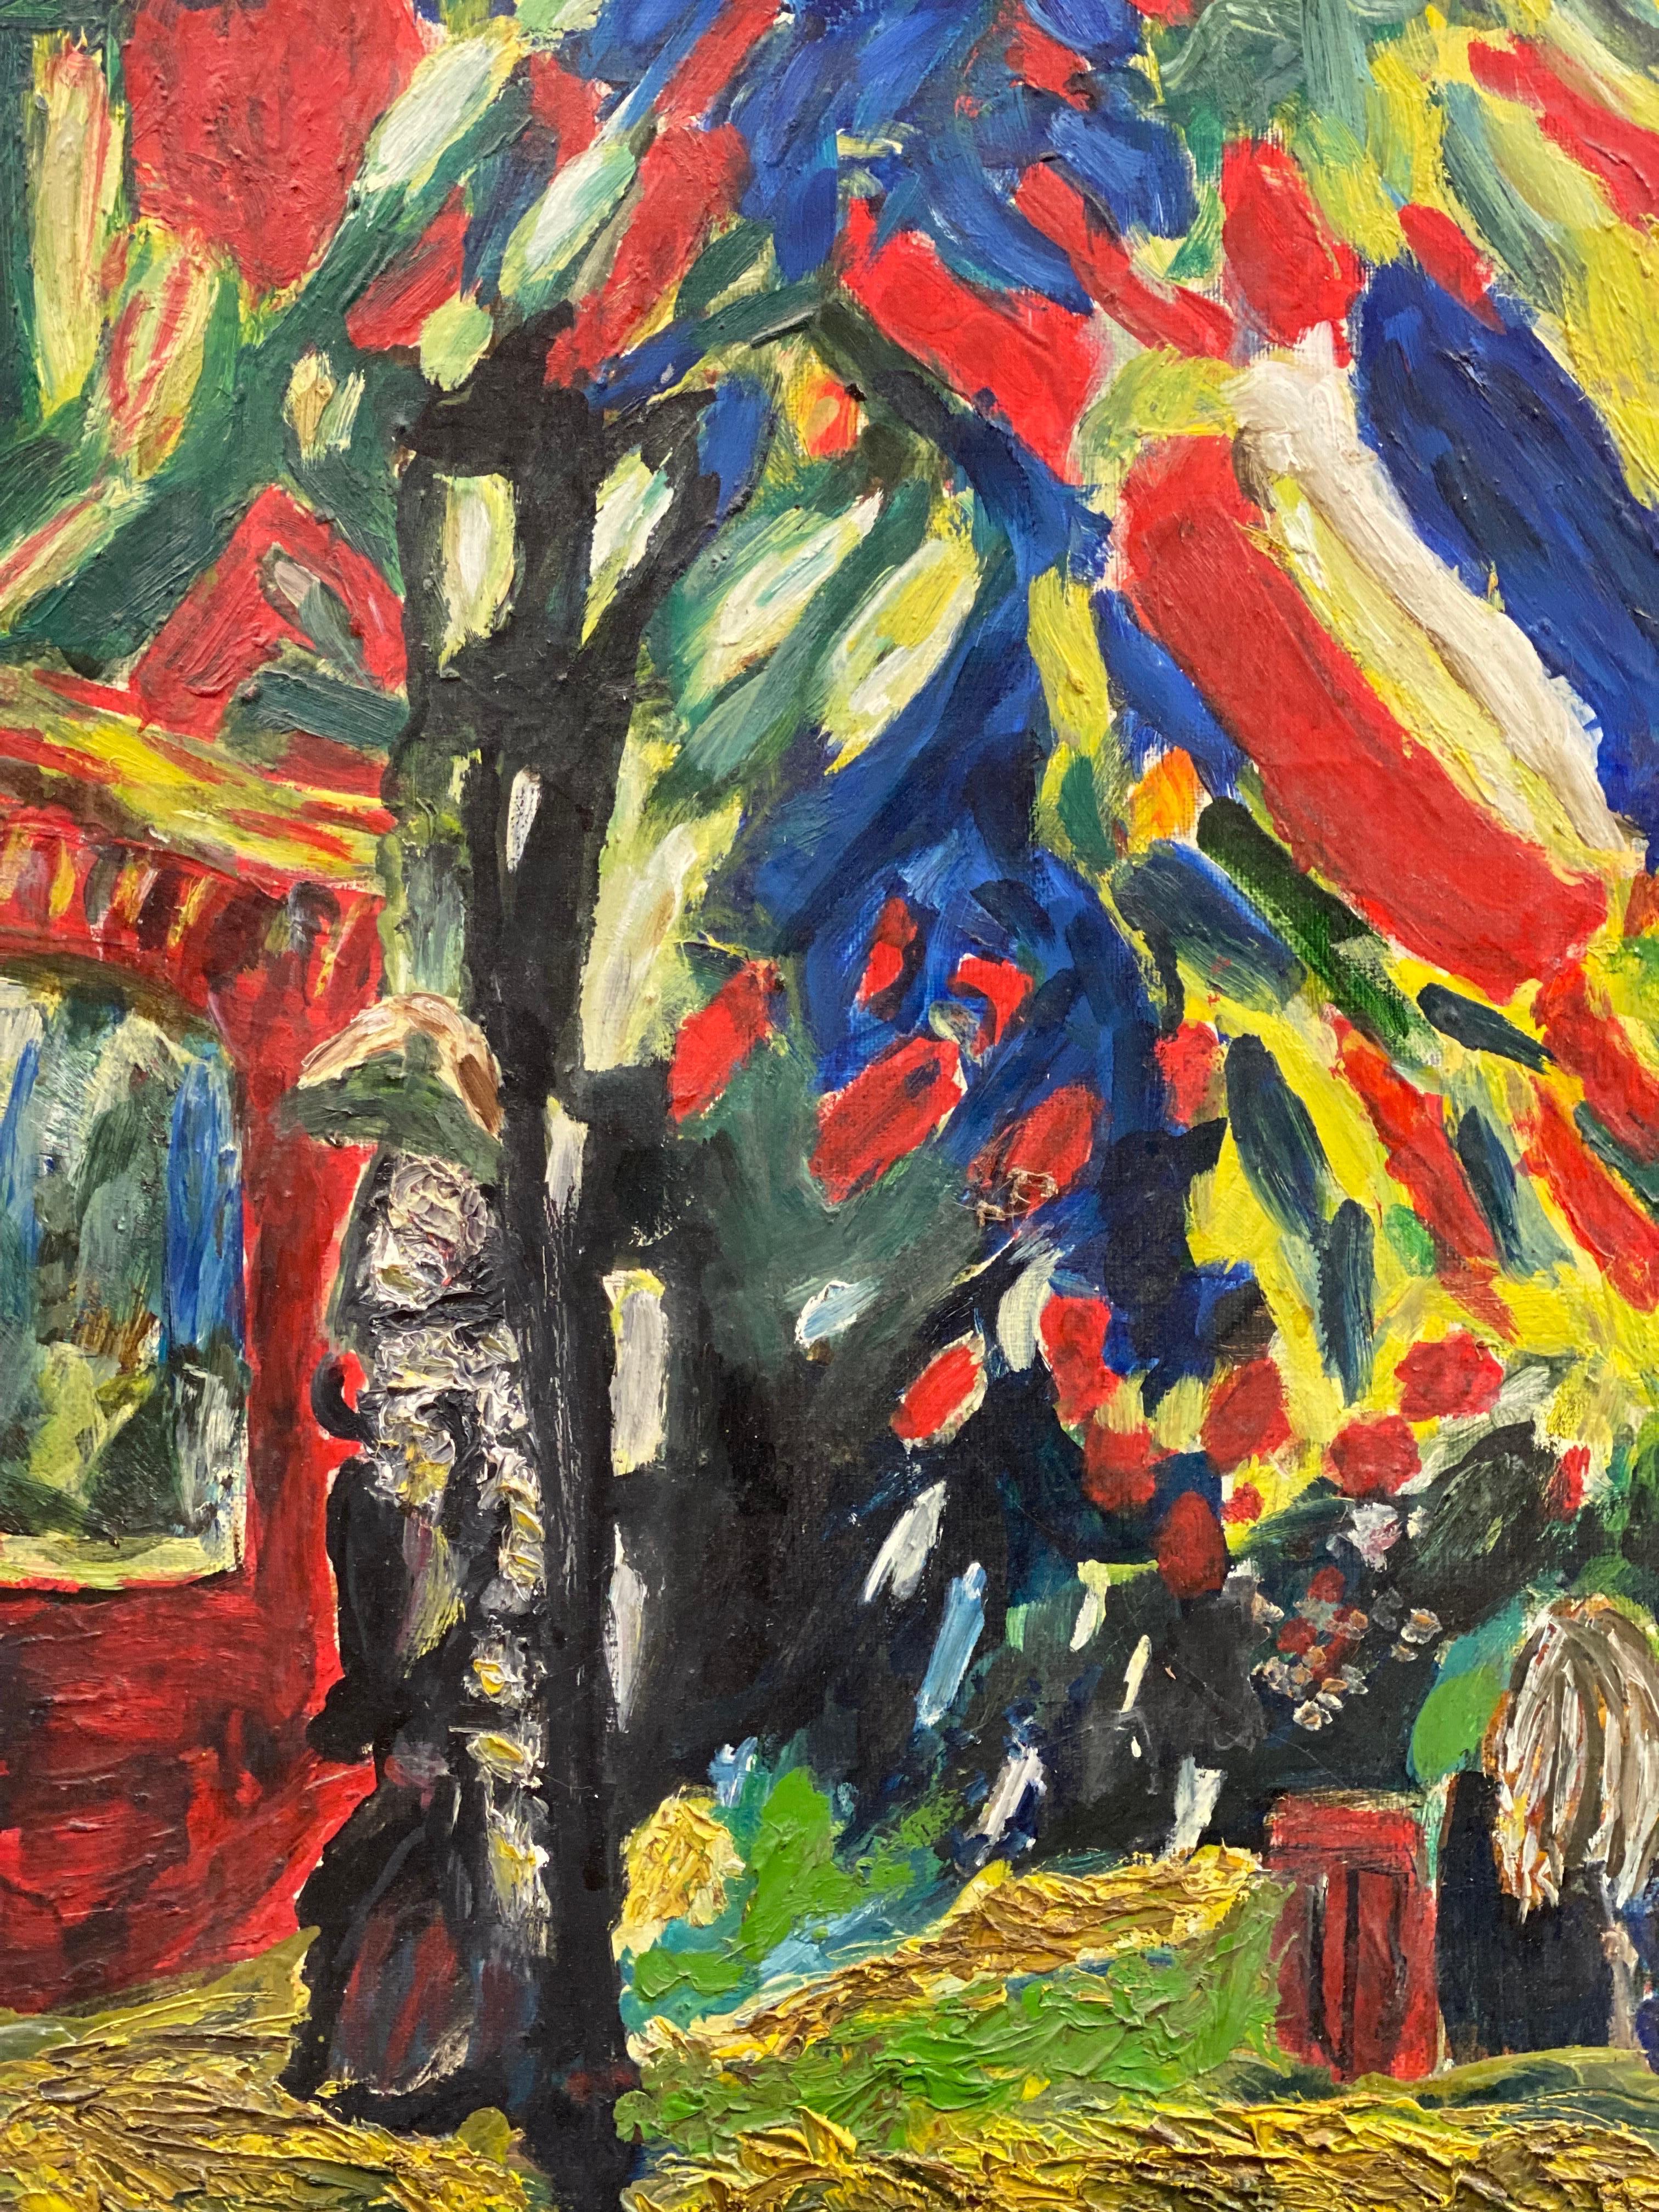 Peinture à l'huile sur toile fauviste française du 20e siècle, colorée, représentant des personnages dans une rue - Fauvisme Painting par French Fauvist